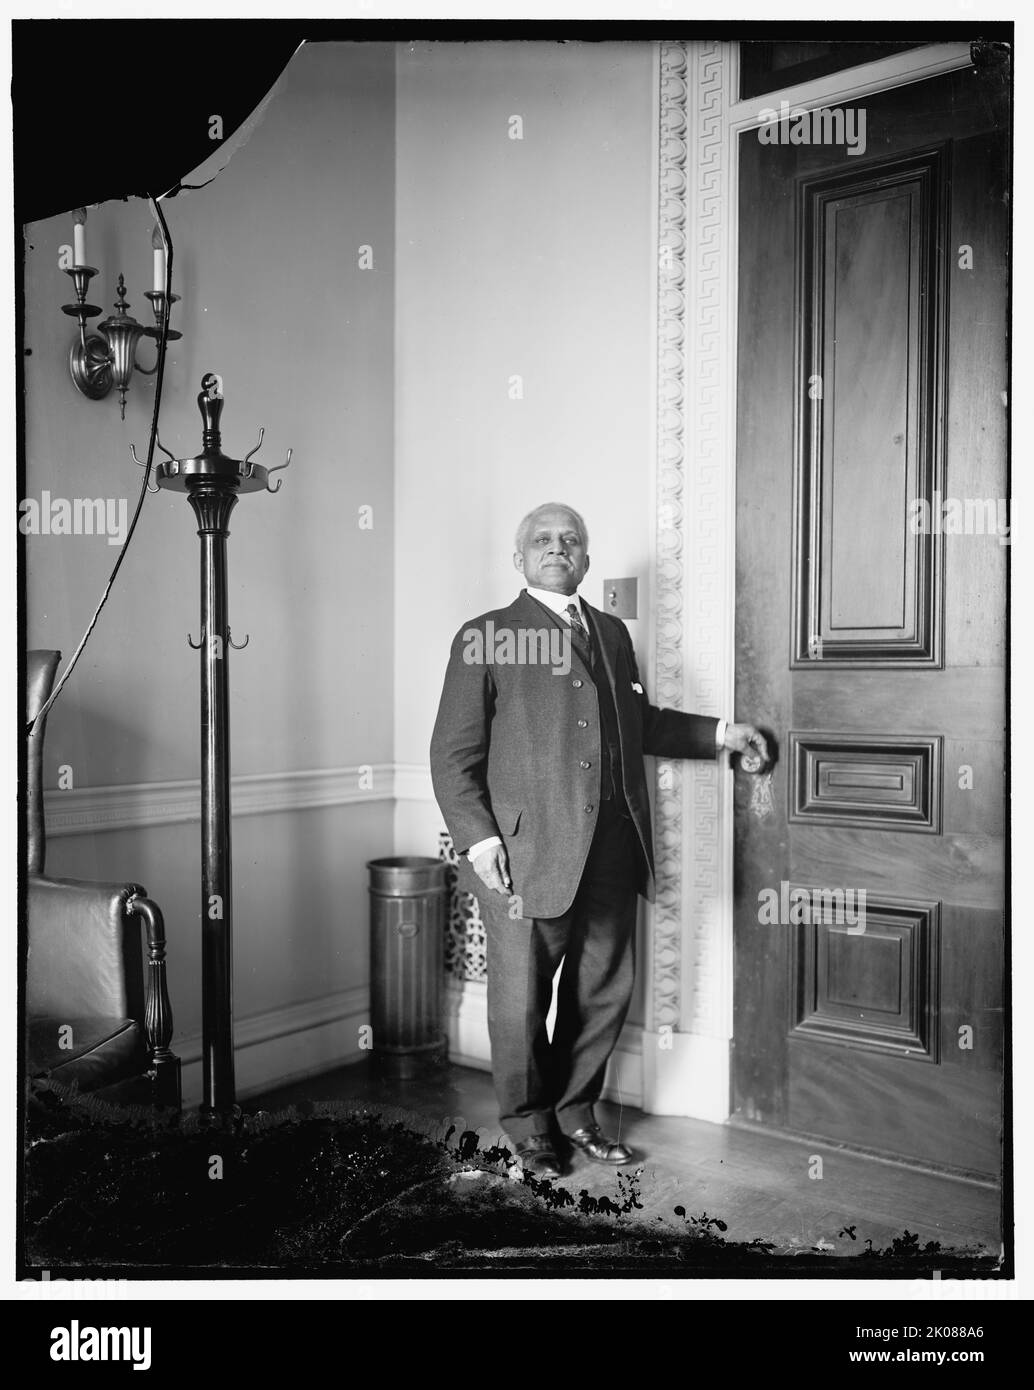 Türsteher in der State Dept, zwischen 1910 und 1920. Afroamerikanischer Mann im Regierungsgebäude, Washington, D.C. Stockfoto